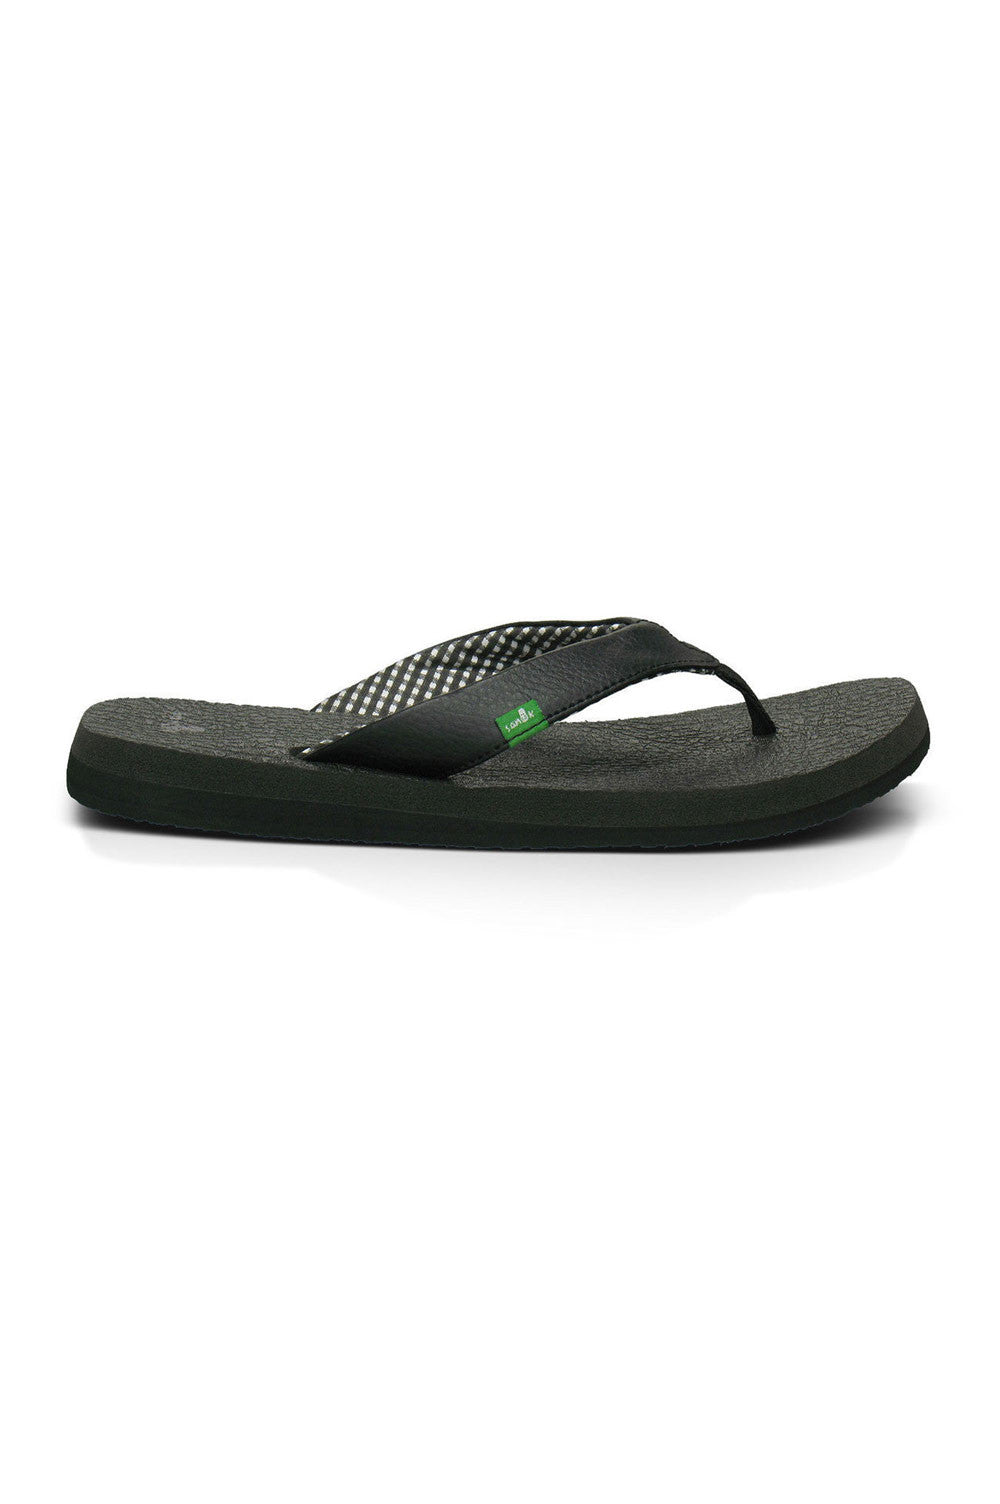 Sanuk Yoga Mat Sandals– Mainland Skate & Surf